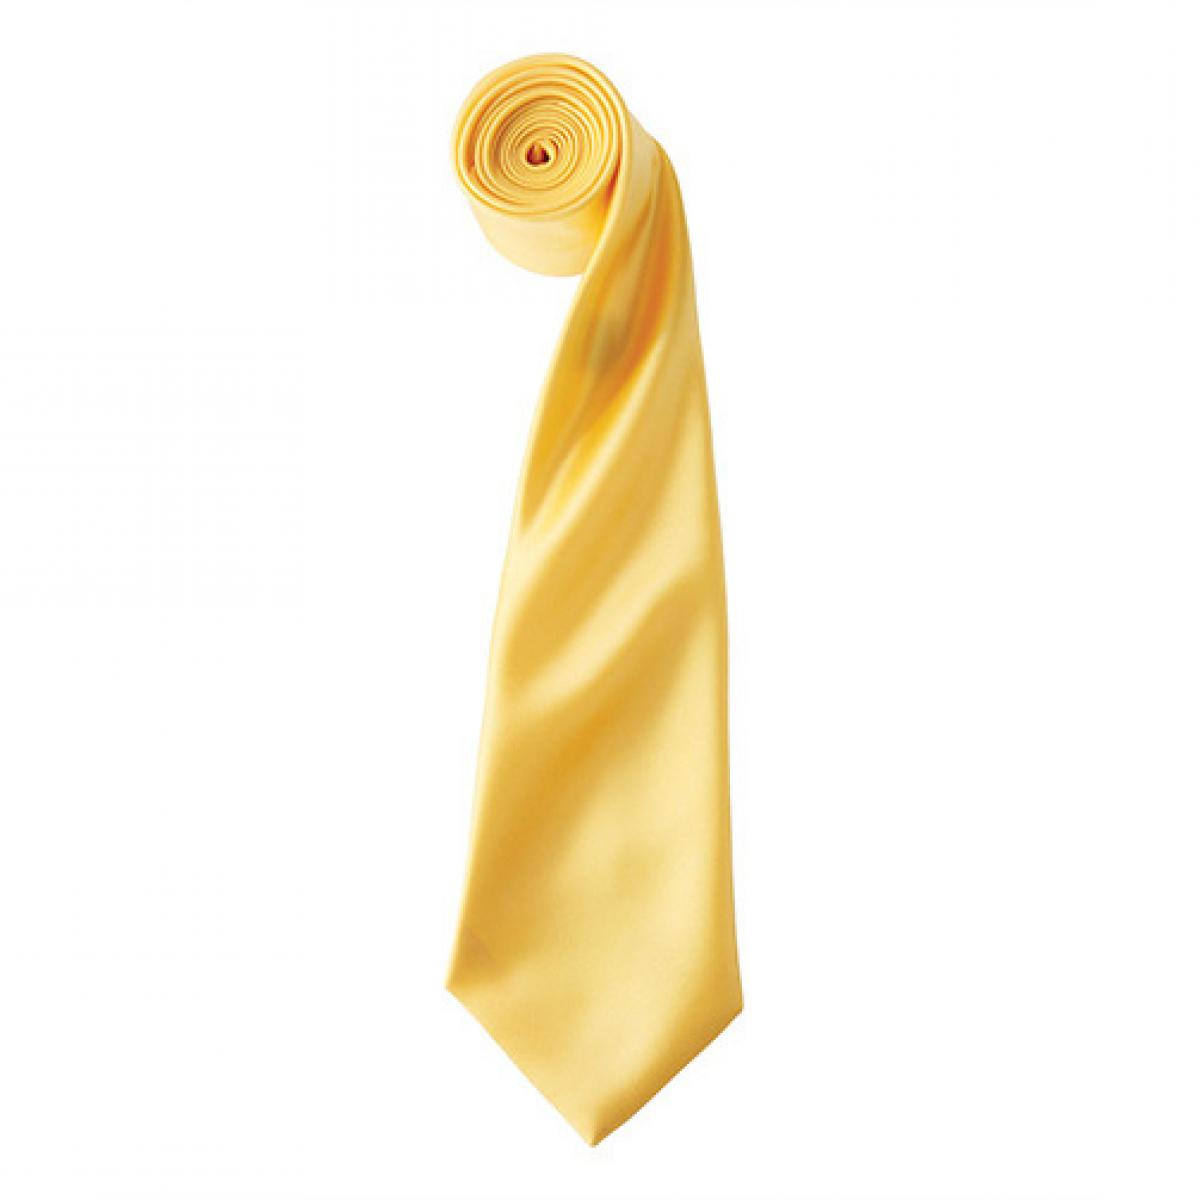 Hersteller: Premier Workwear Herstellernummer: PR750 Artikelbezeichnung: Satin Tie ´Colours´ / 144 x 8,5 cm Farbe: Sunflower (ca. Pantone 136c)